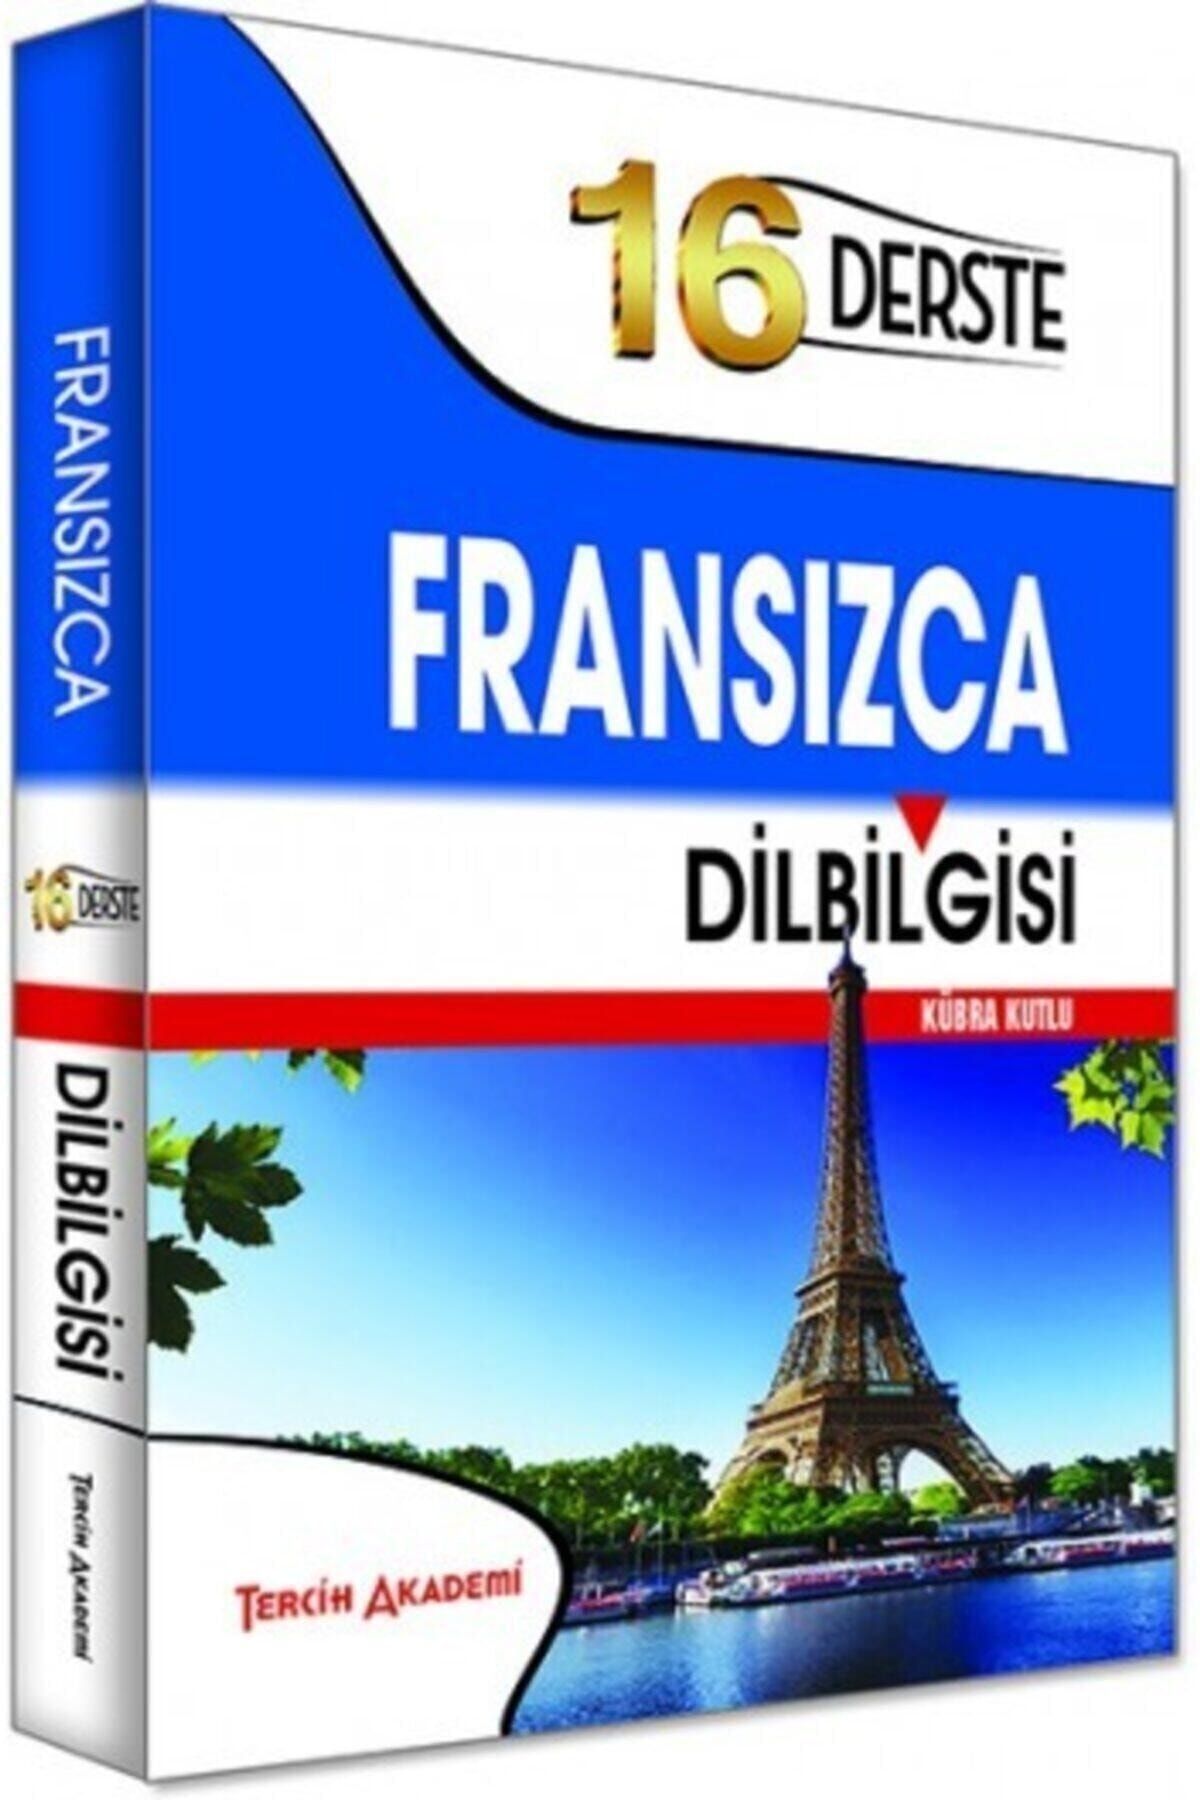 Tercih Akademi Fransızca Gramer Kitabı .16 Derste Fransızca Dilbilgisi (TAMAMI TÜRKÇE AÇIKLAMALI)